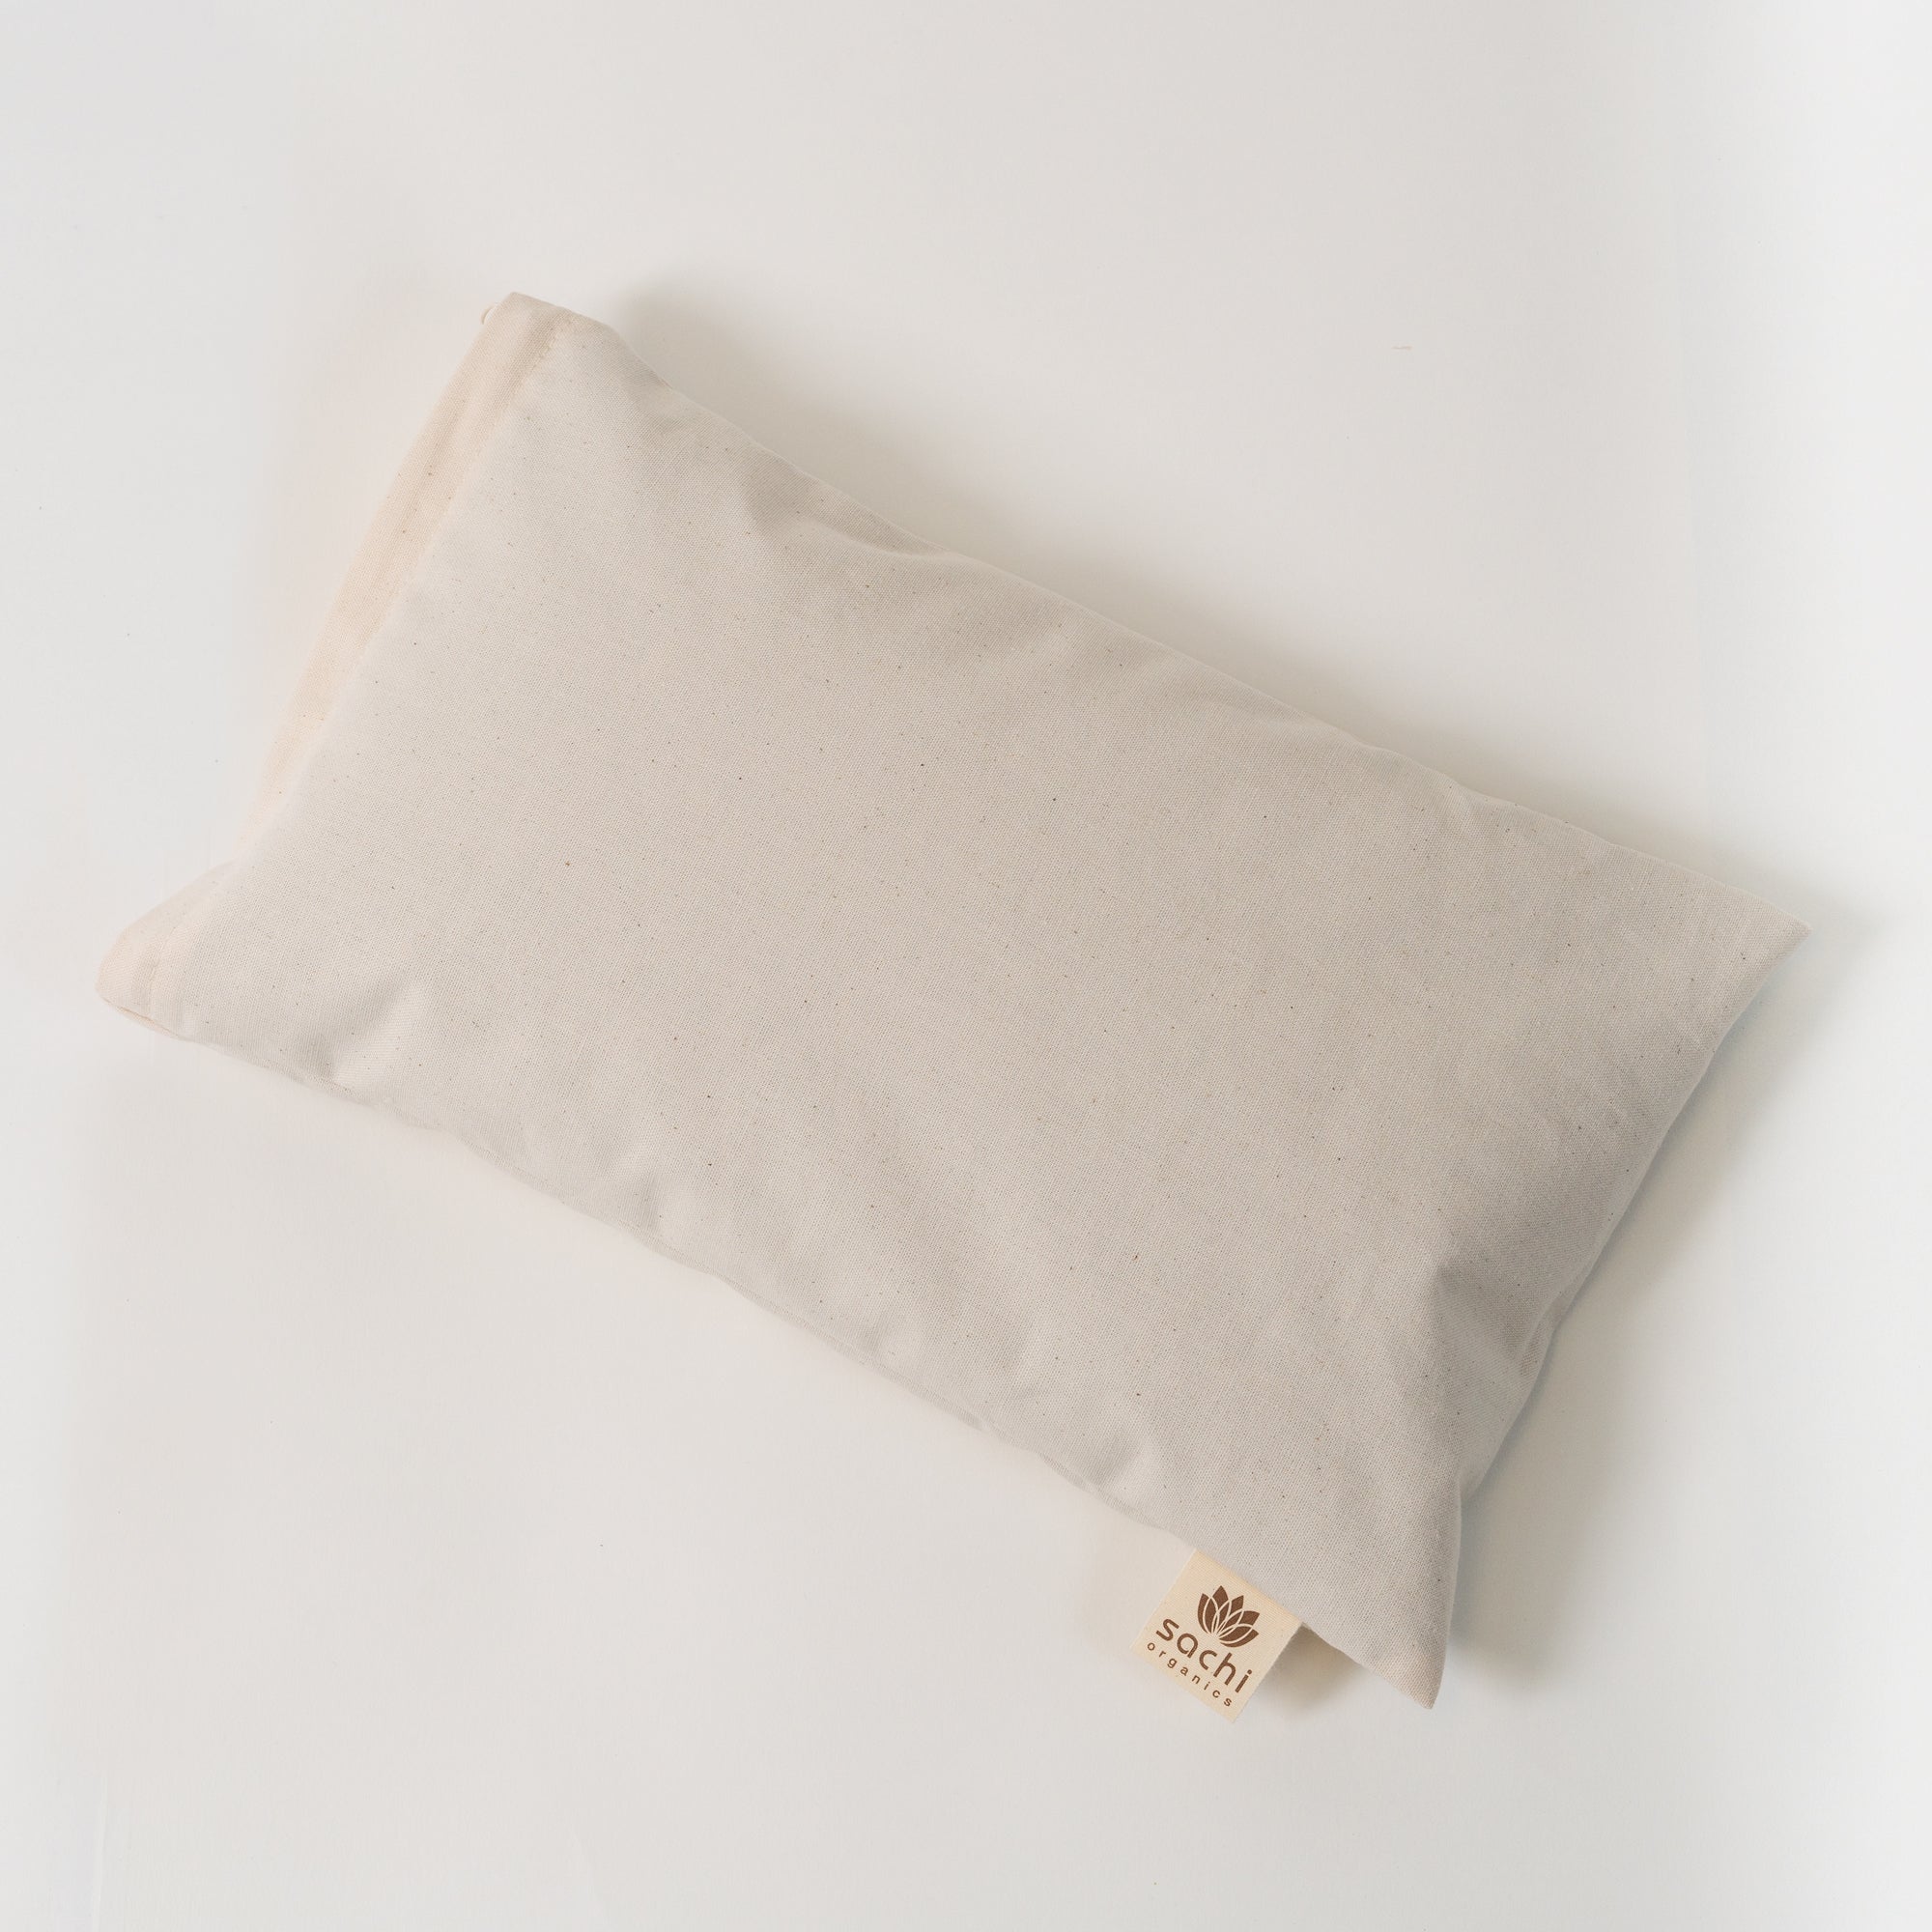 Small White Pillow 